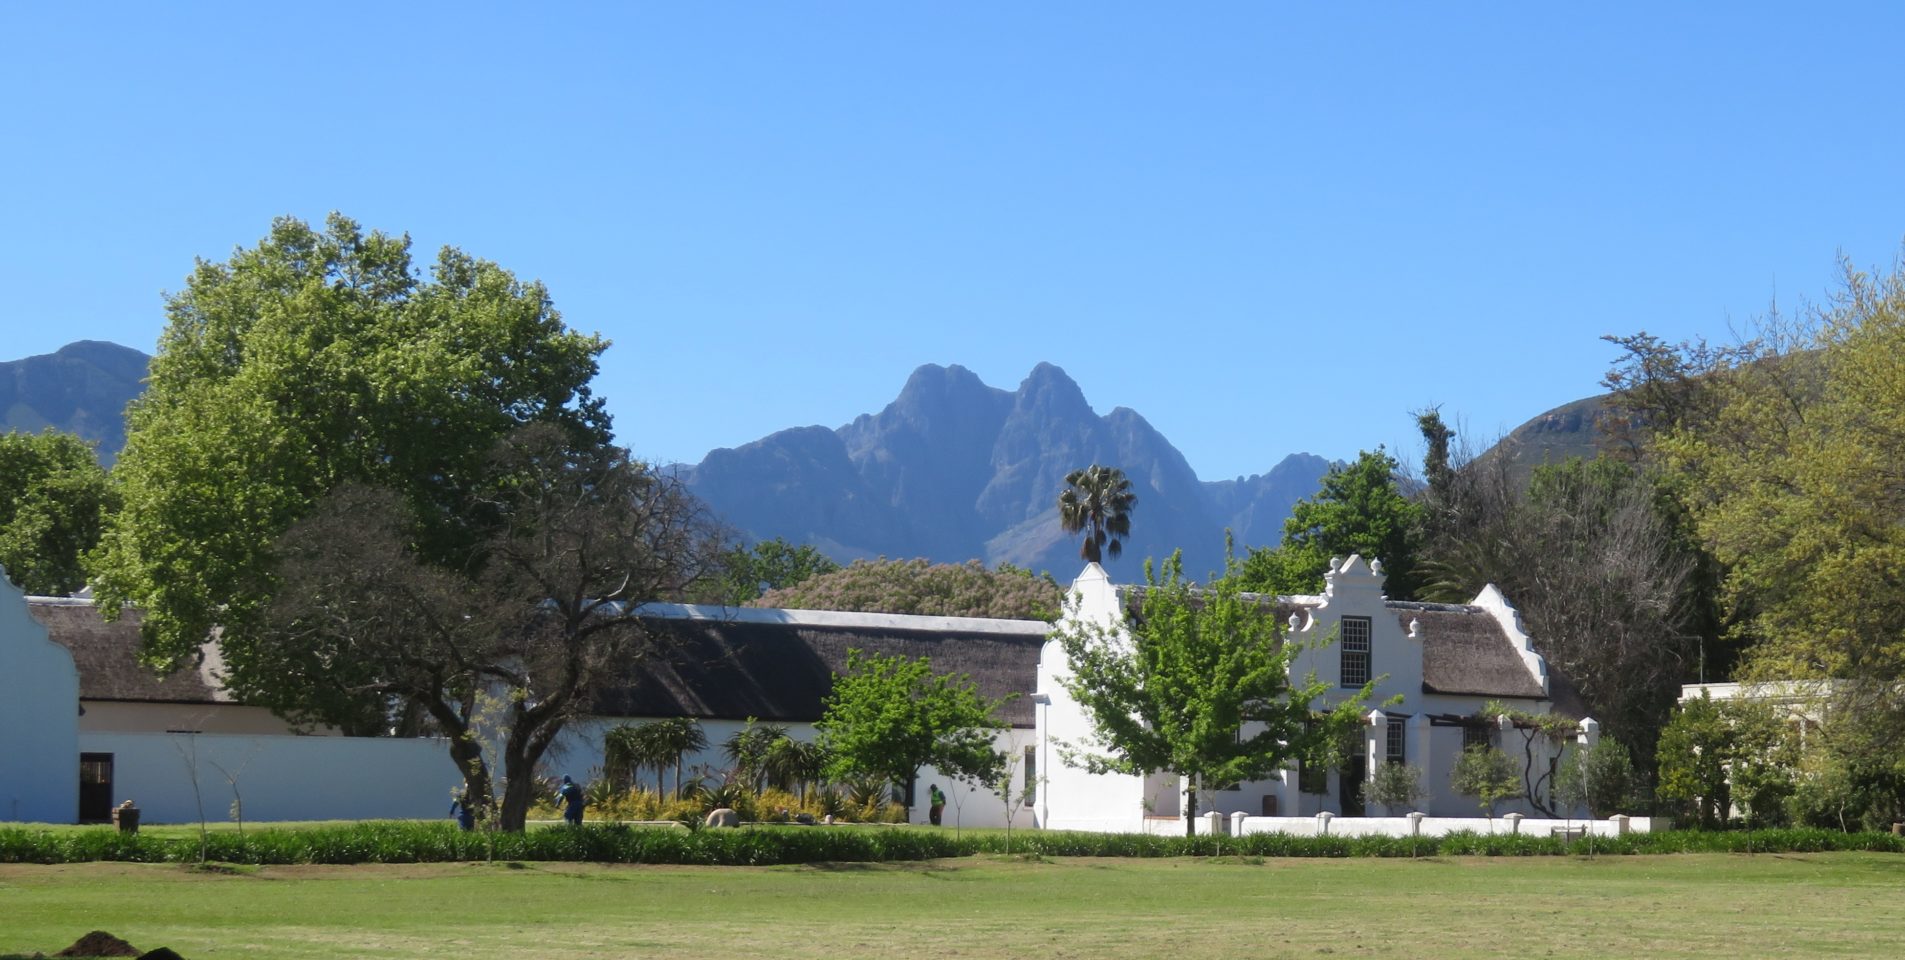 Town of Stellenbosch, South Africa